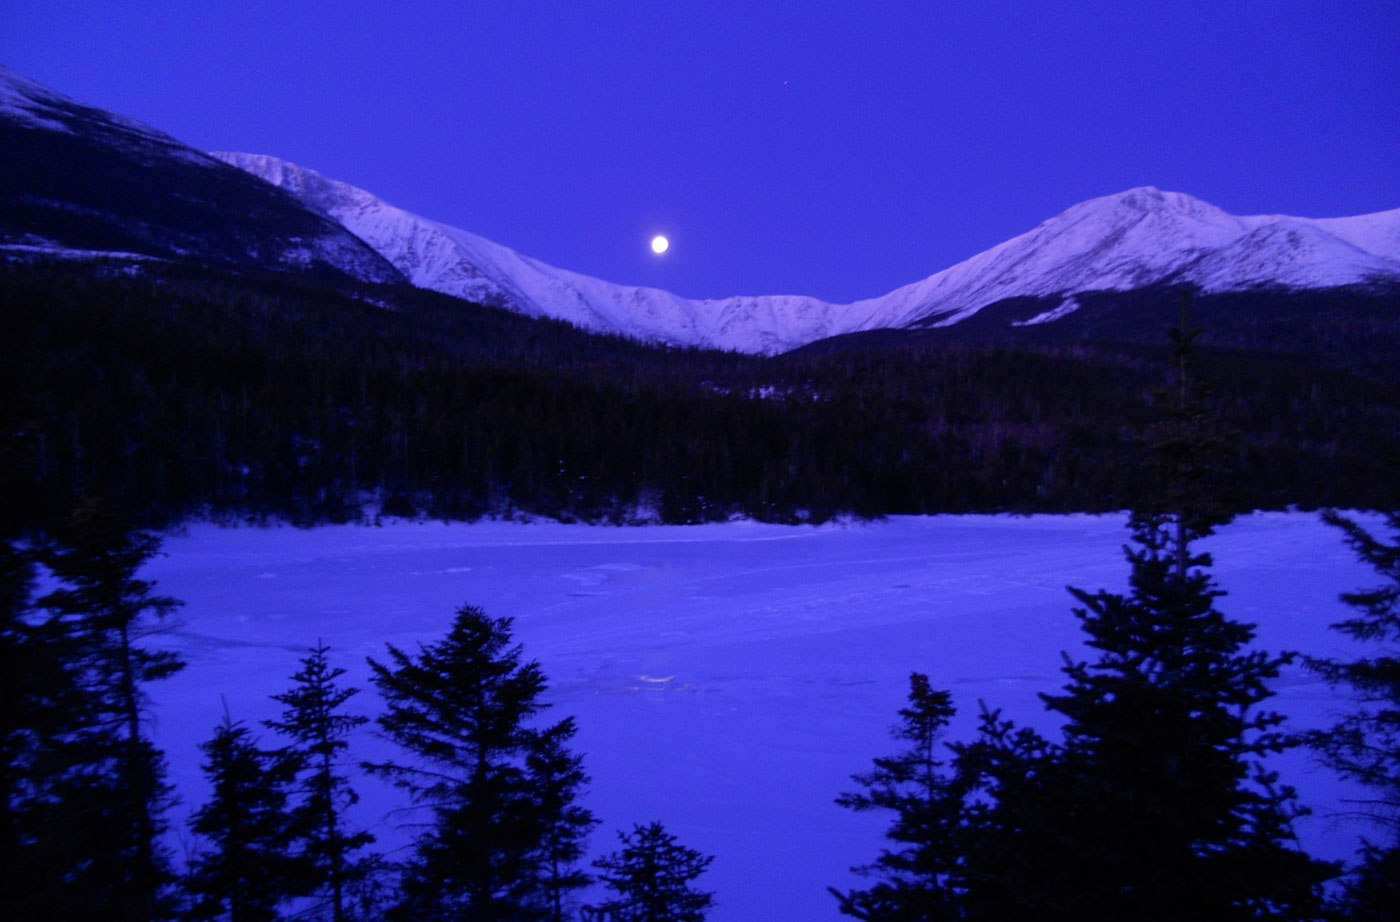 Katahdin in winter moonlight